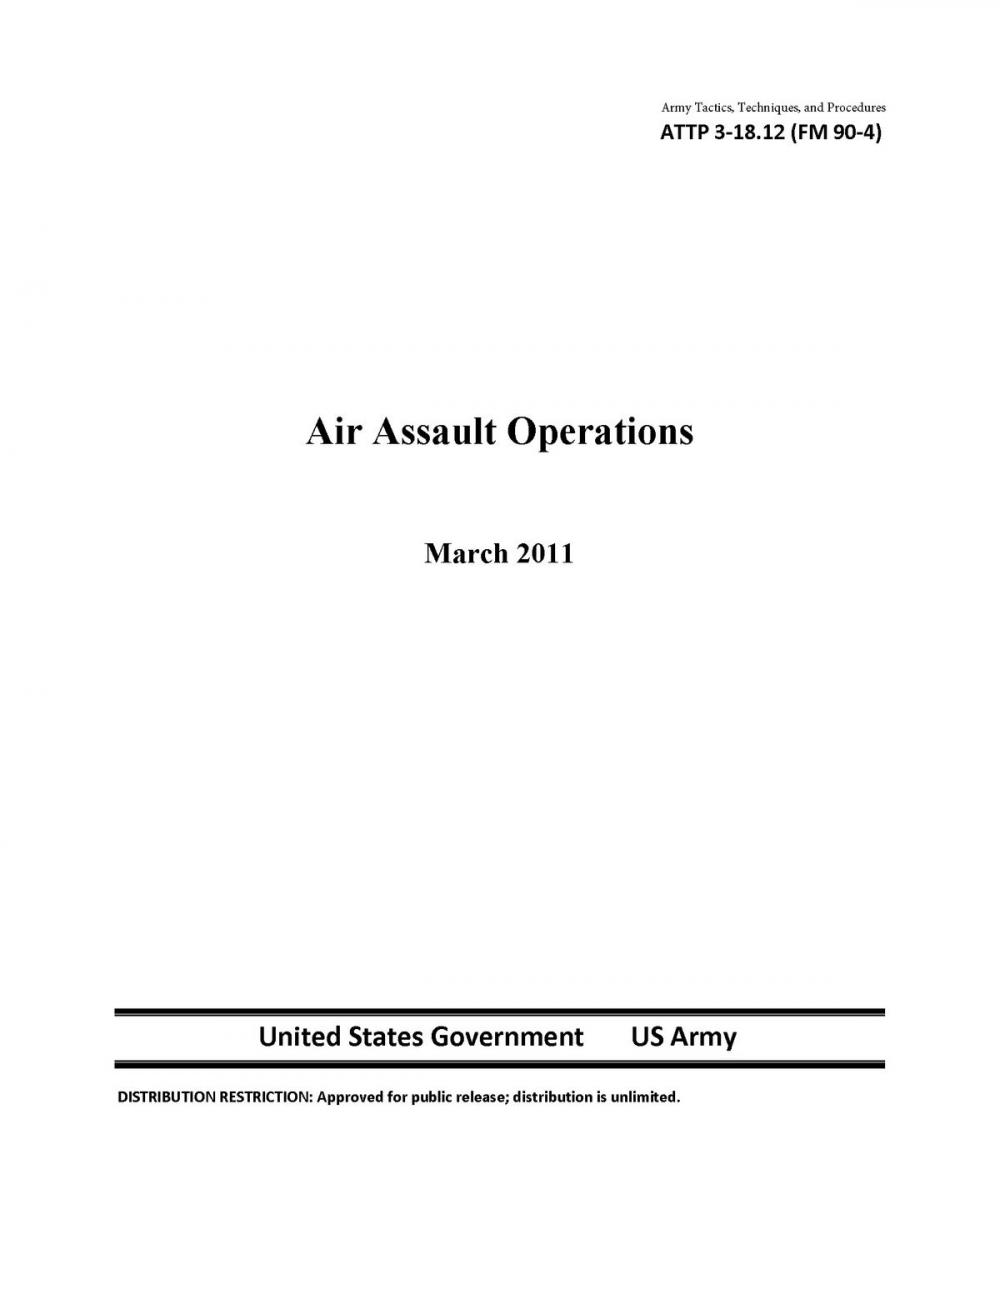 Big bigCover of Army Tactics, Techniques, and Procedures ATTP 3-18.12 (FM 90-4) Air Assault Operations